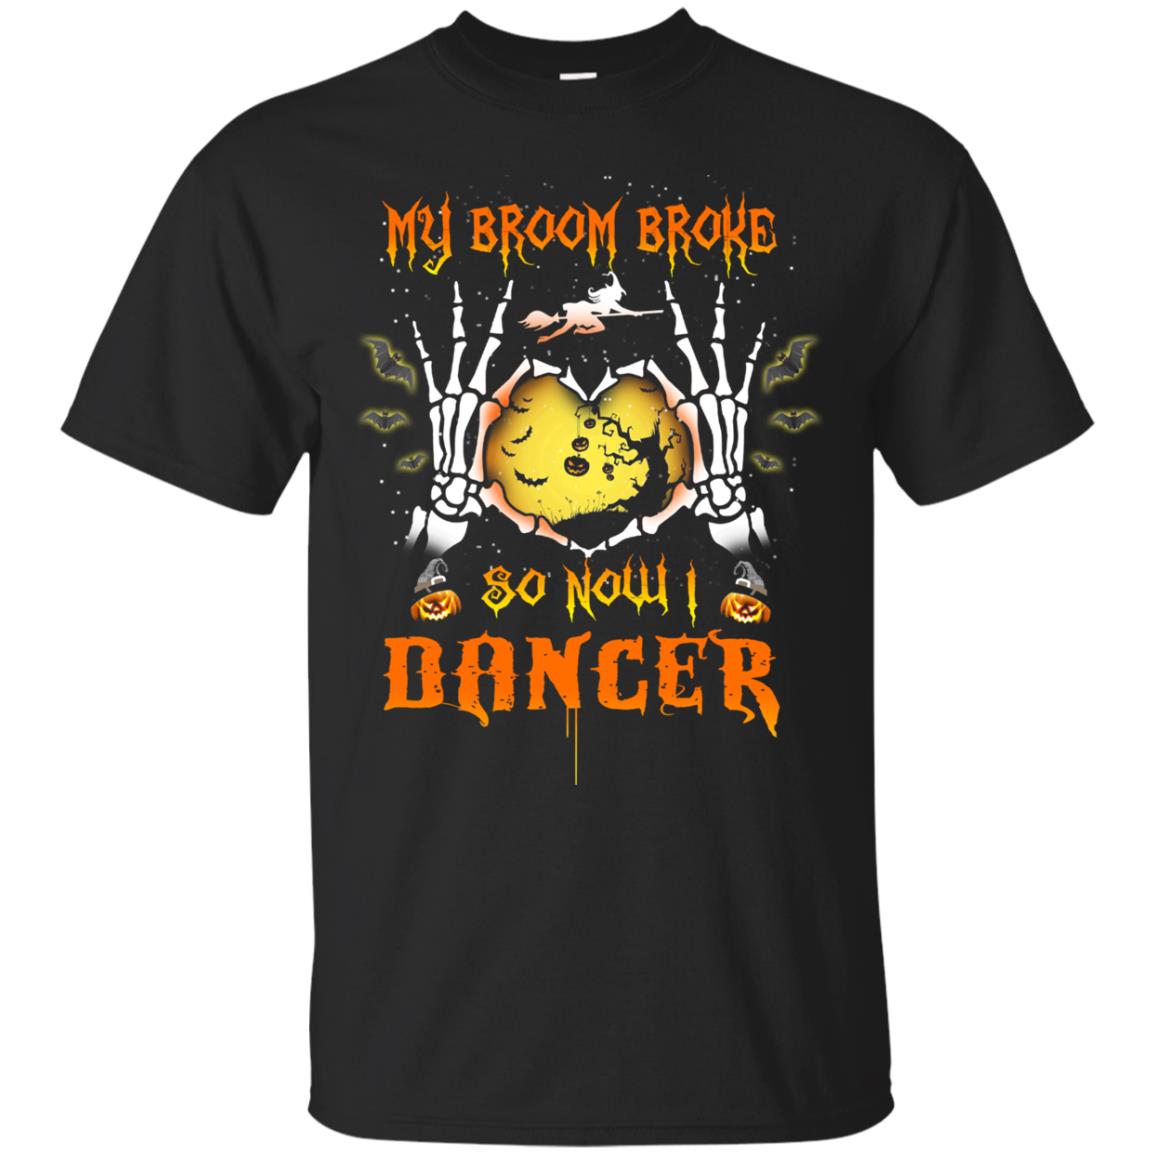 My broom broke so now I Dancer shirt, hoodie, tank